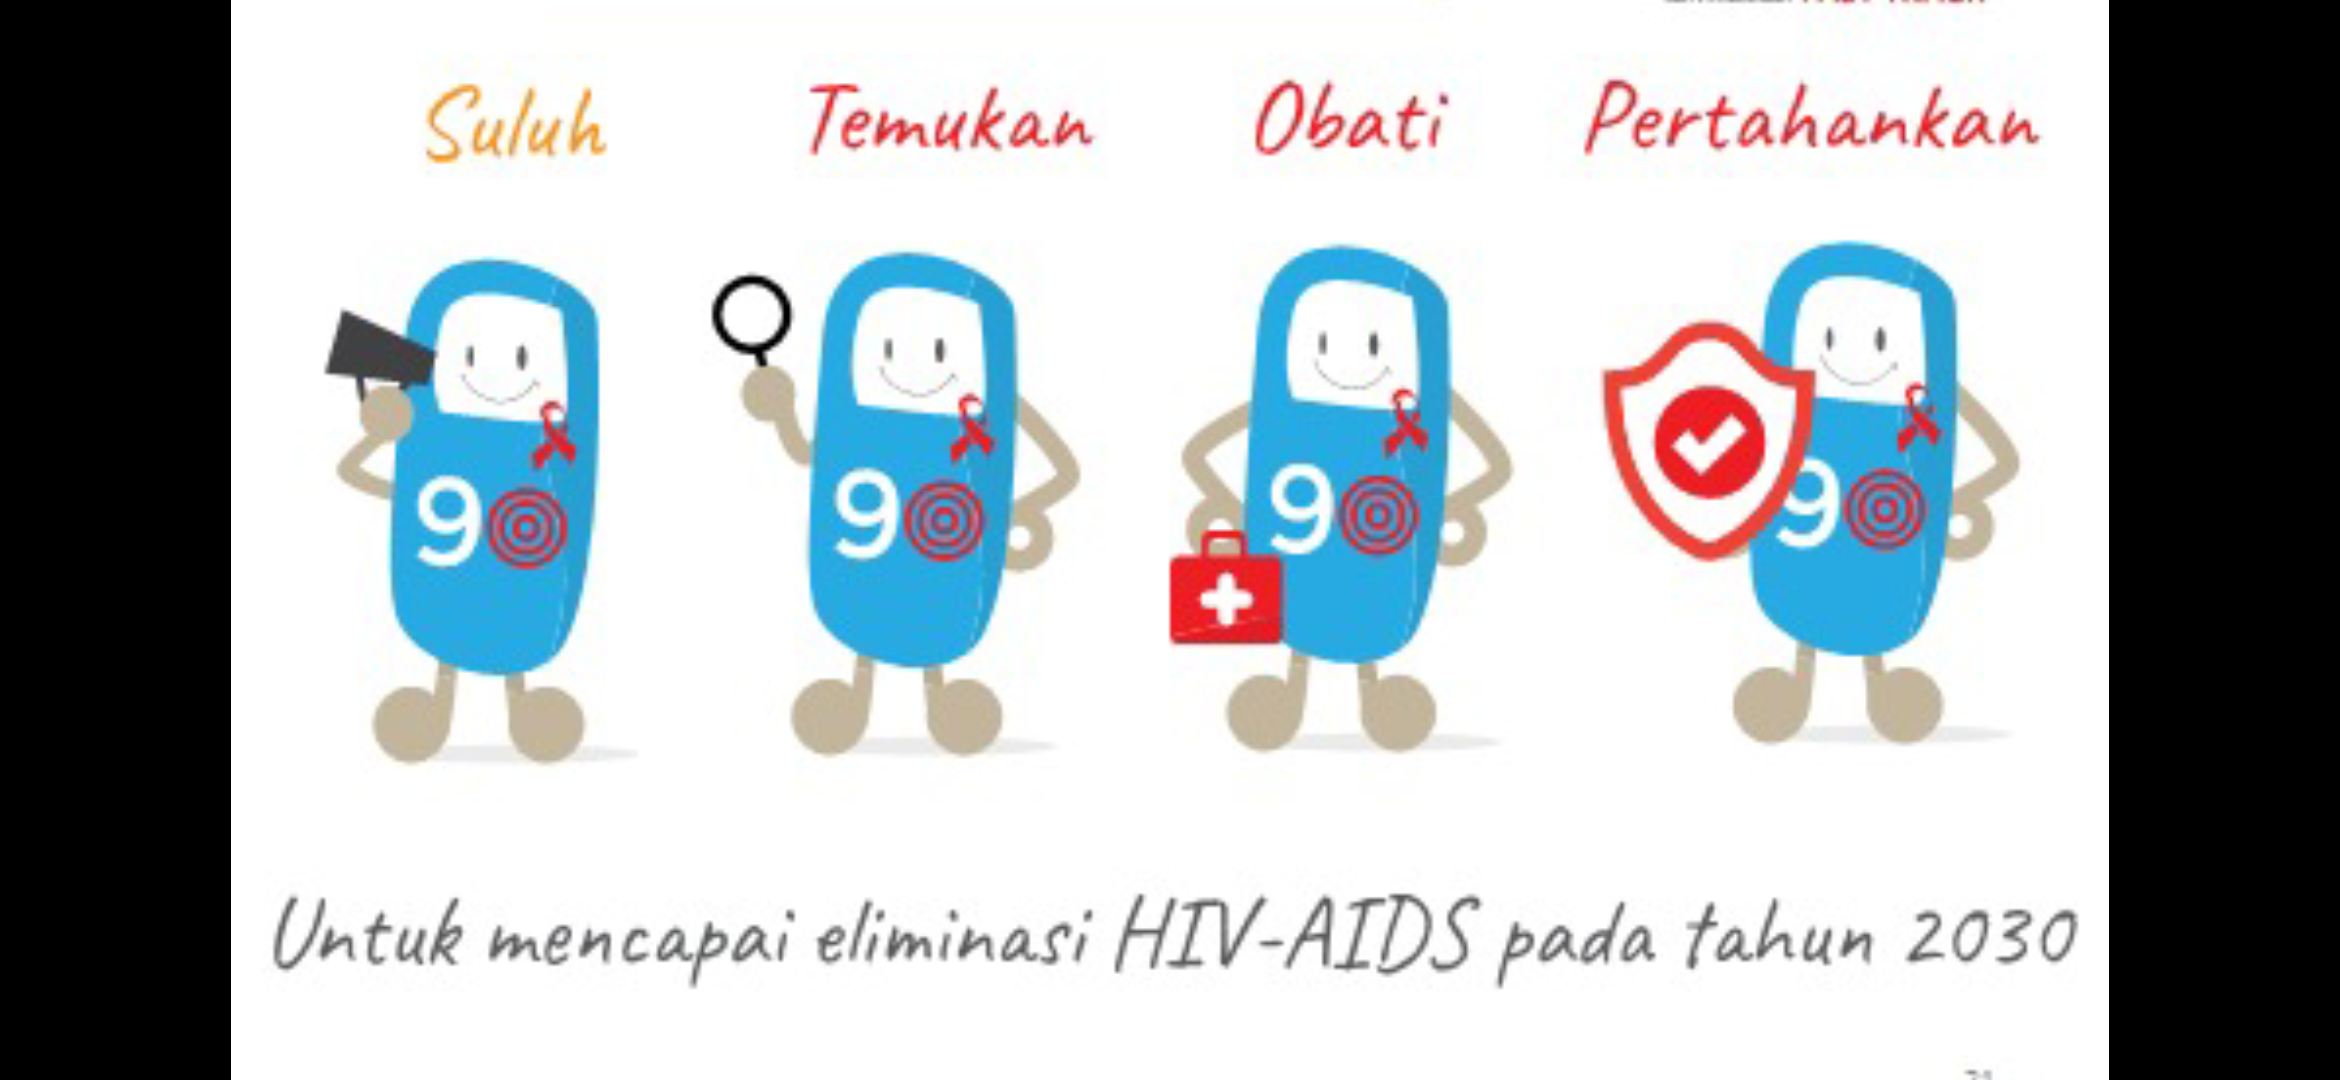 ciri-ciri penyakit hiv aids adalah